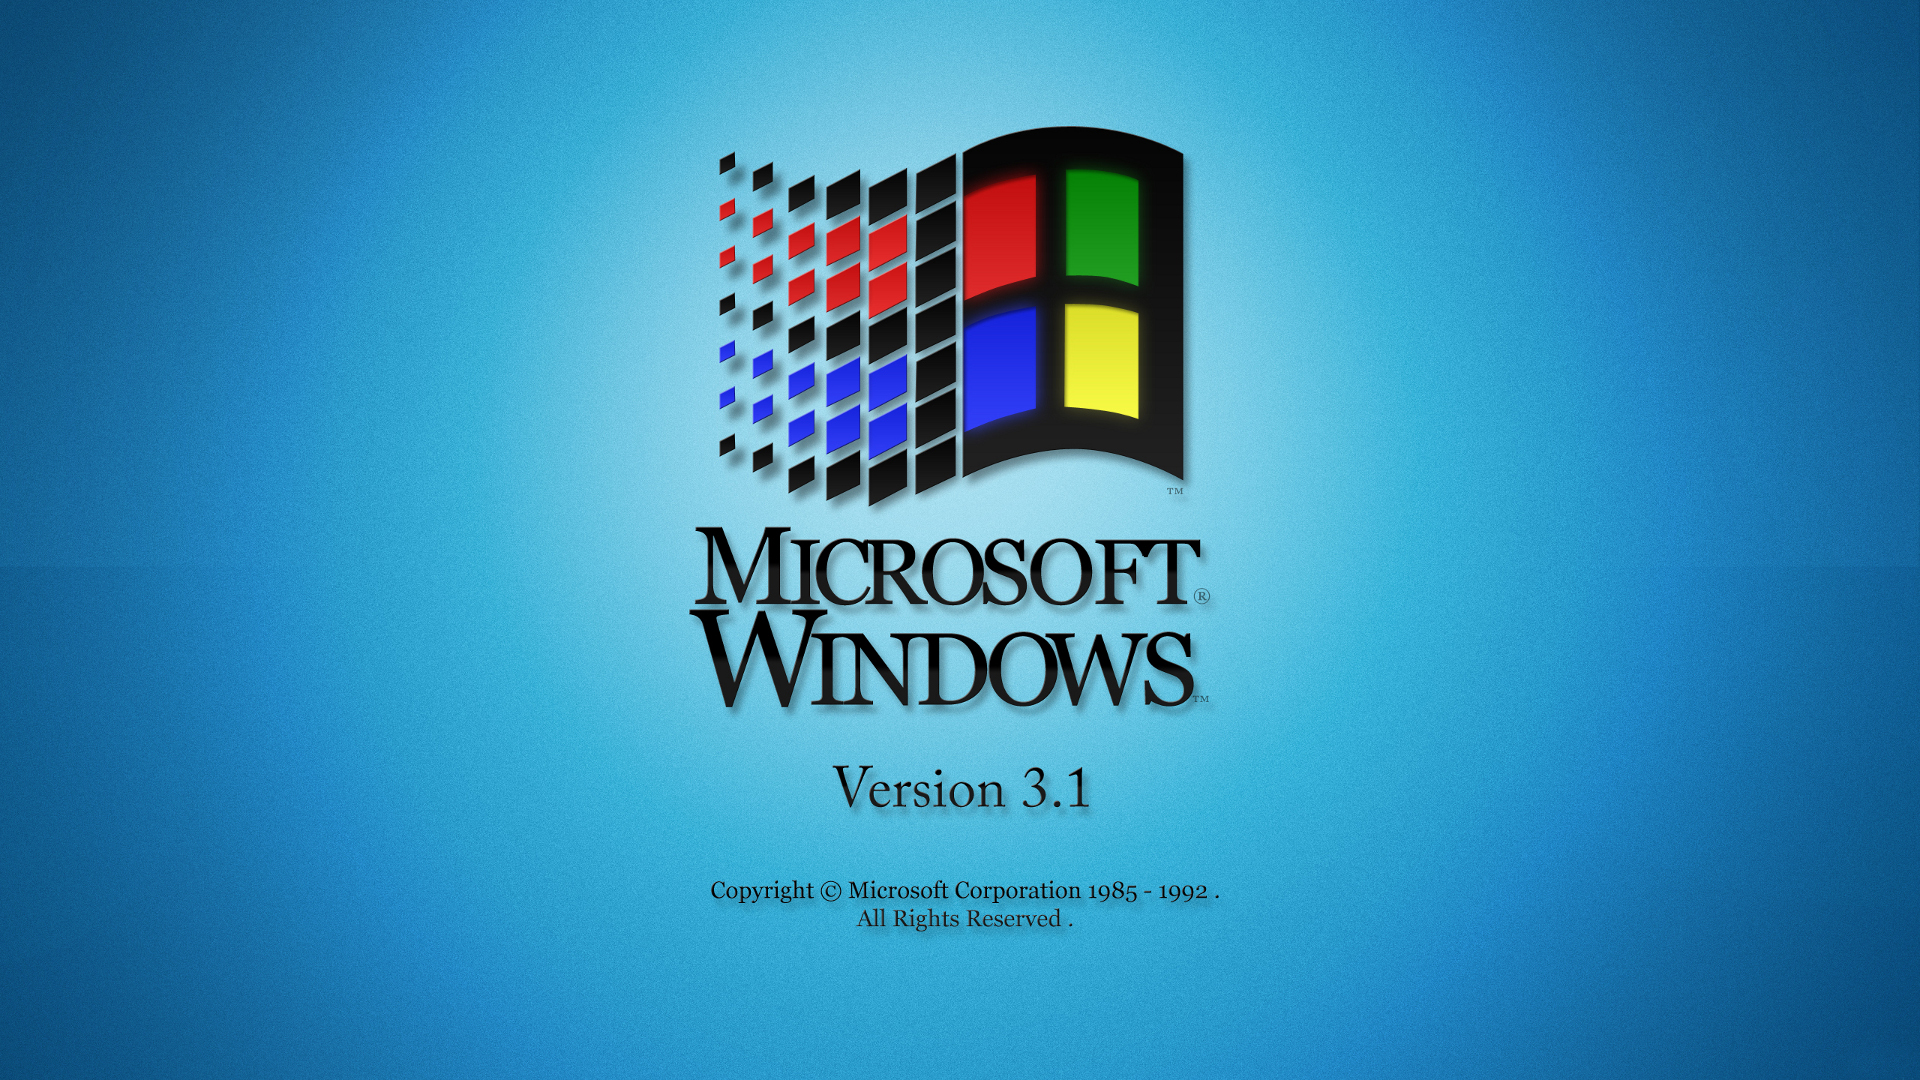 Hệ điều hành Windows: Windows là hệ điều hành phổ biến nhất trên thế giới, với hàng triệu người dùng. Hệ điều hành Windows không chỉ hỗ trợ cài đặt và sử dụng những phần mềm mới nhất, mà còn cung cấp những tính năng nâng cao để tăng hiệu quả làm việc và sử dụng máy tính.